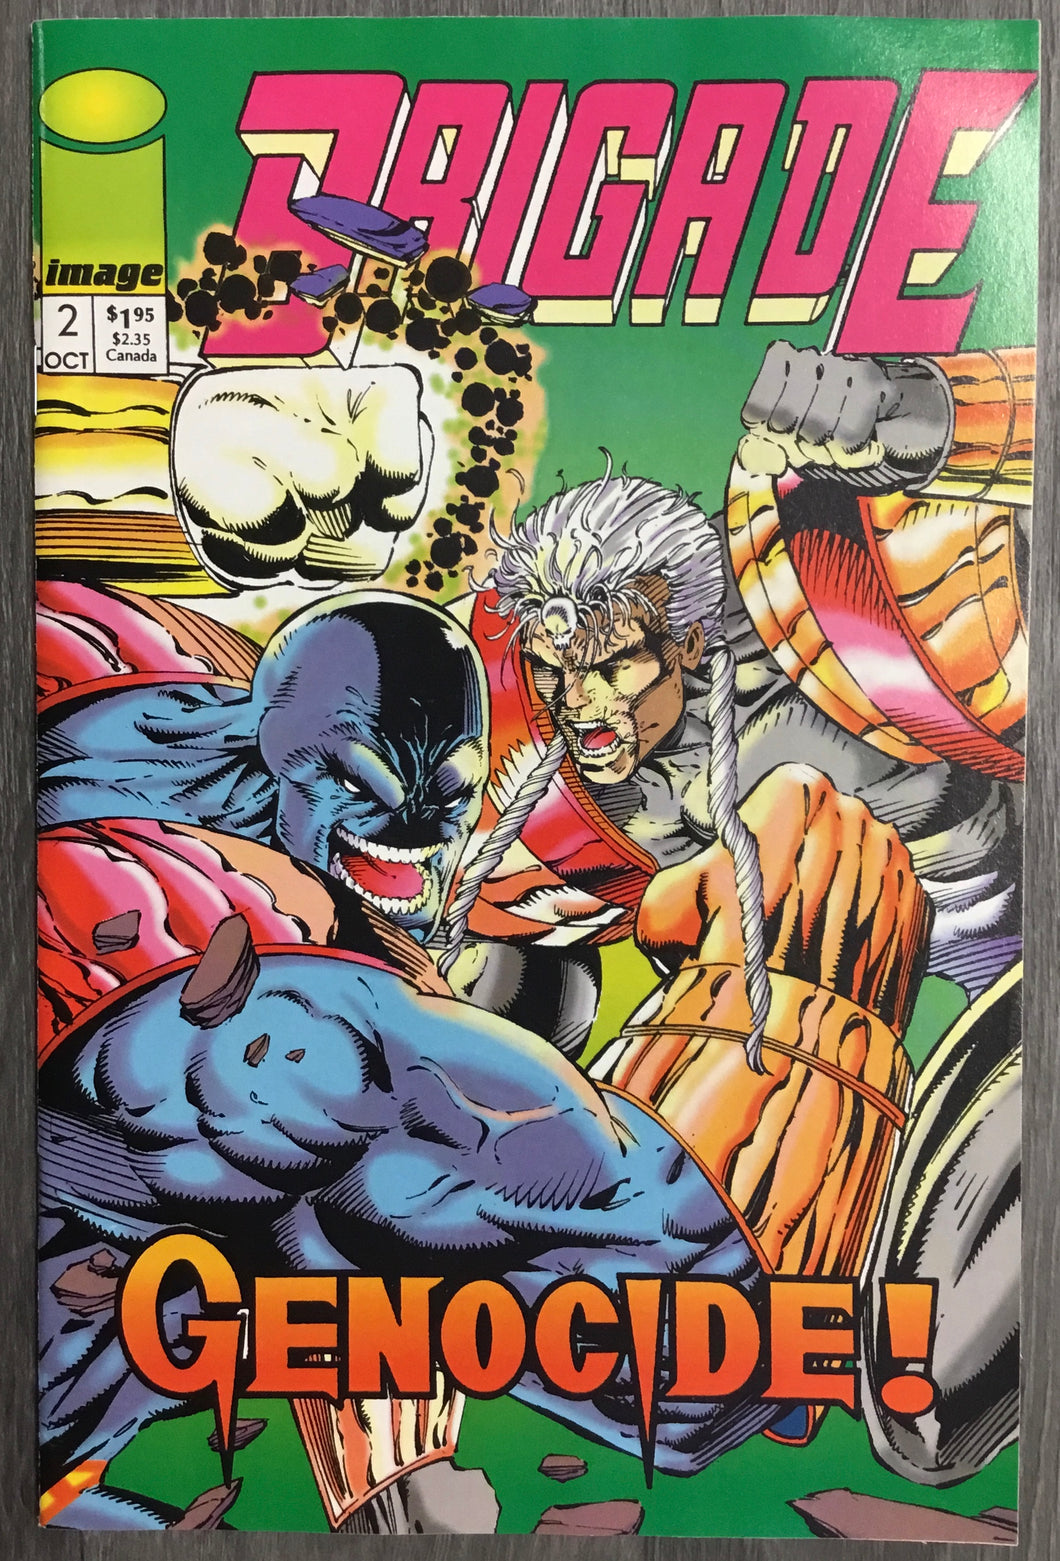 Brigade No. #2 1992 Image Comics